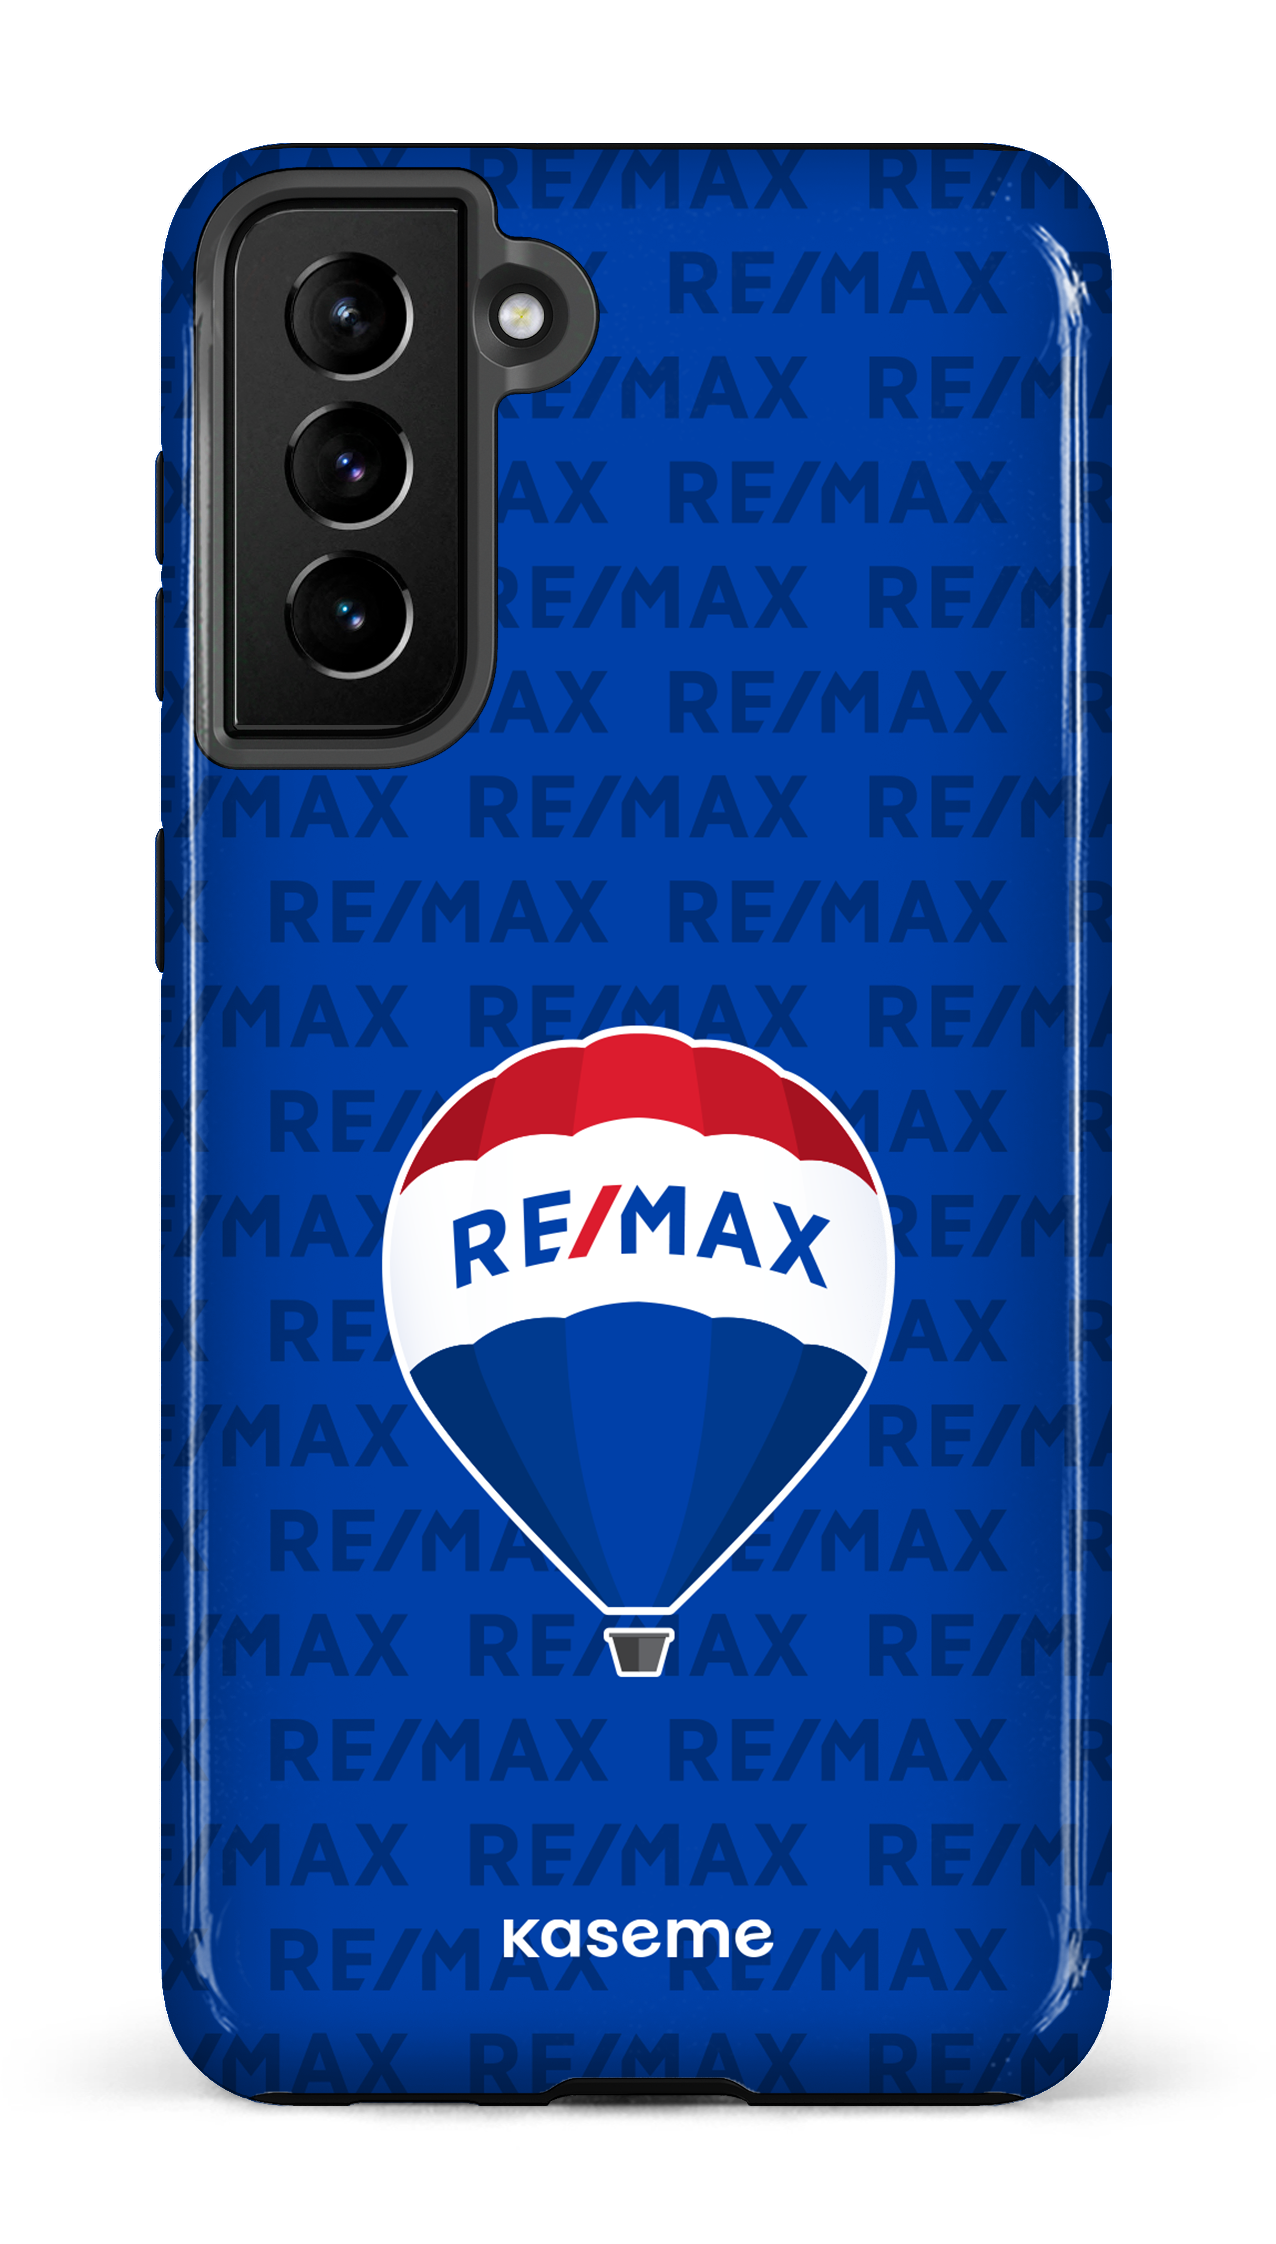 Remax pattern Bleu - Galaxy S21 Plus